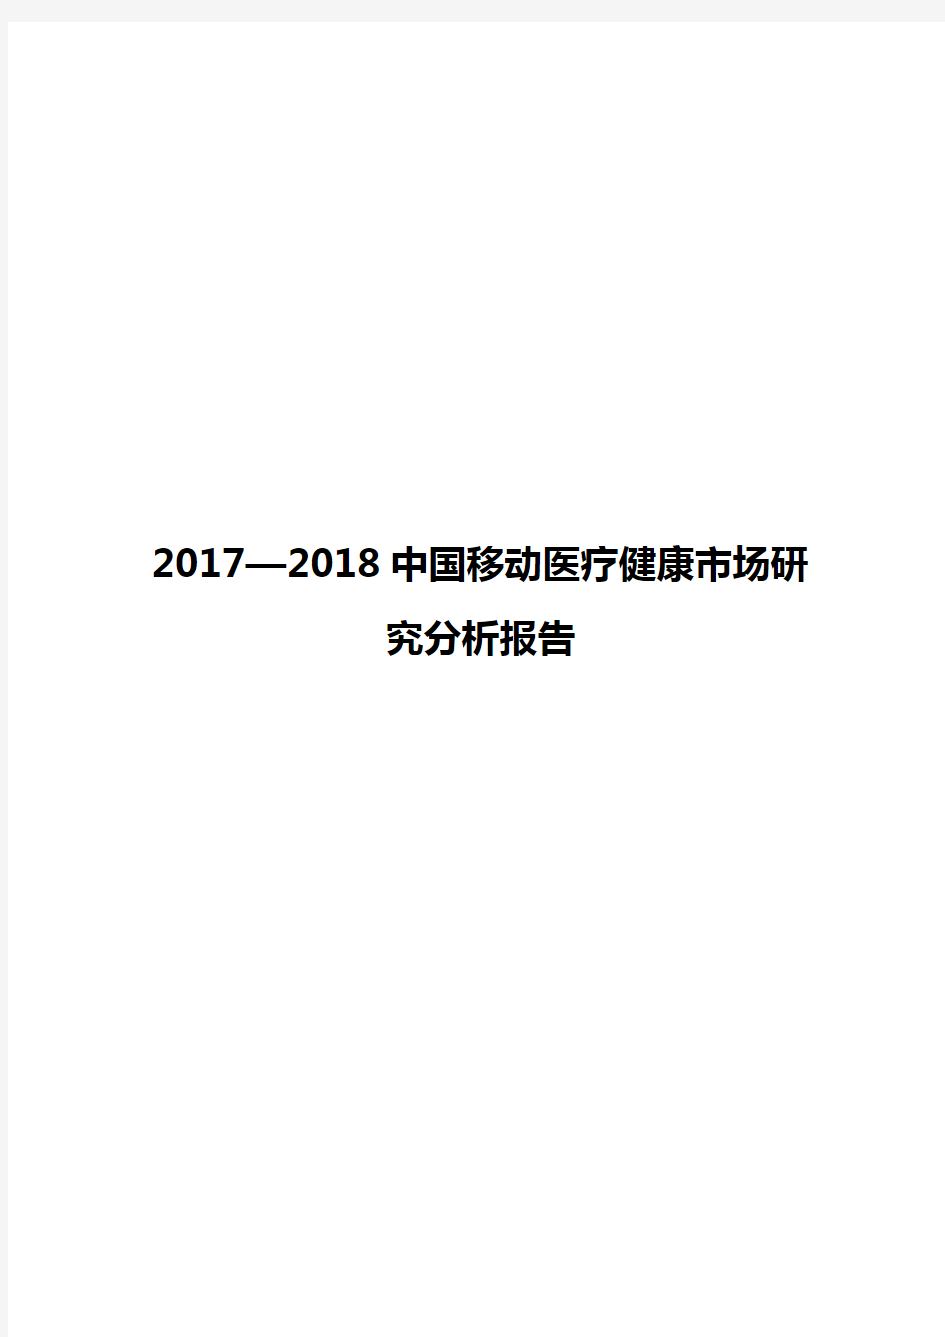 2017—2018中国移动医疗健康市场研究分析报告